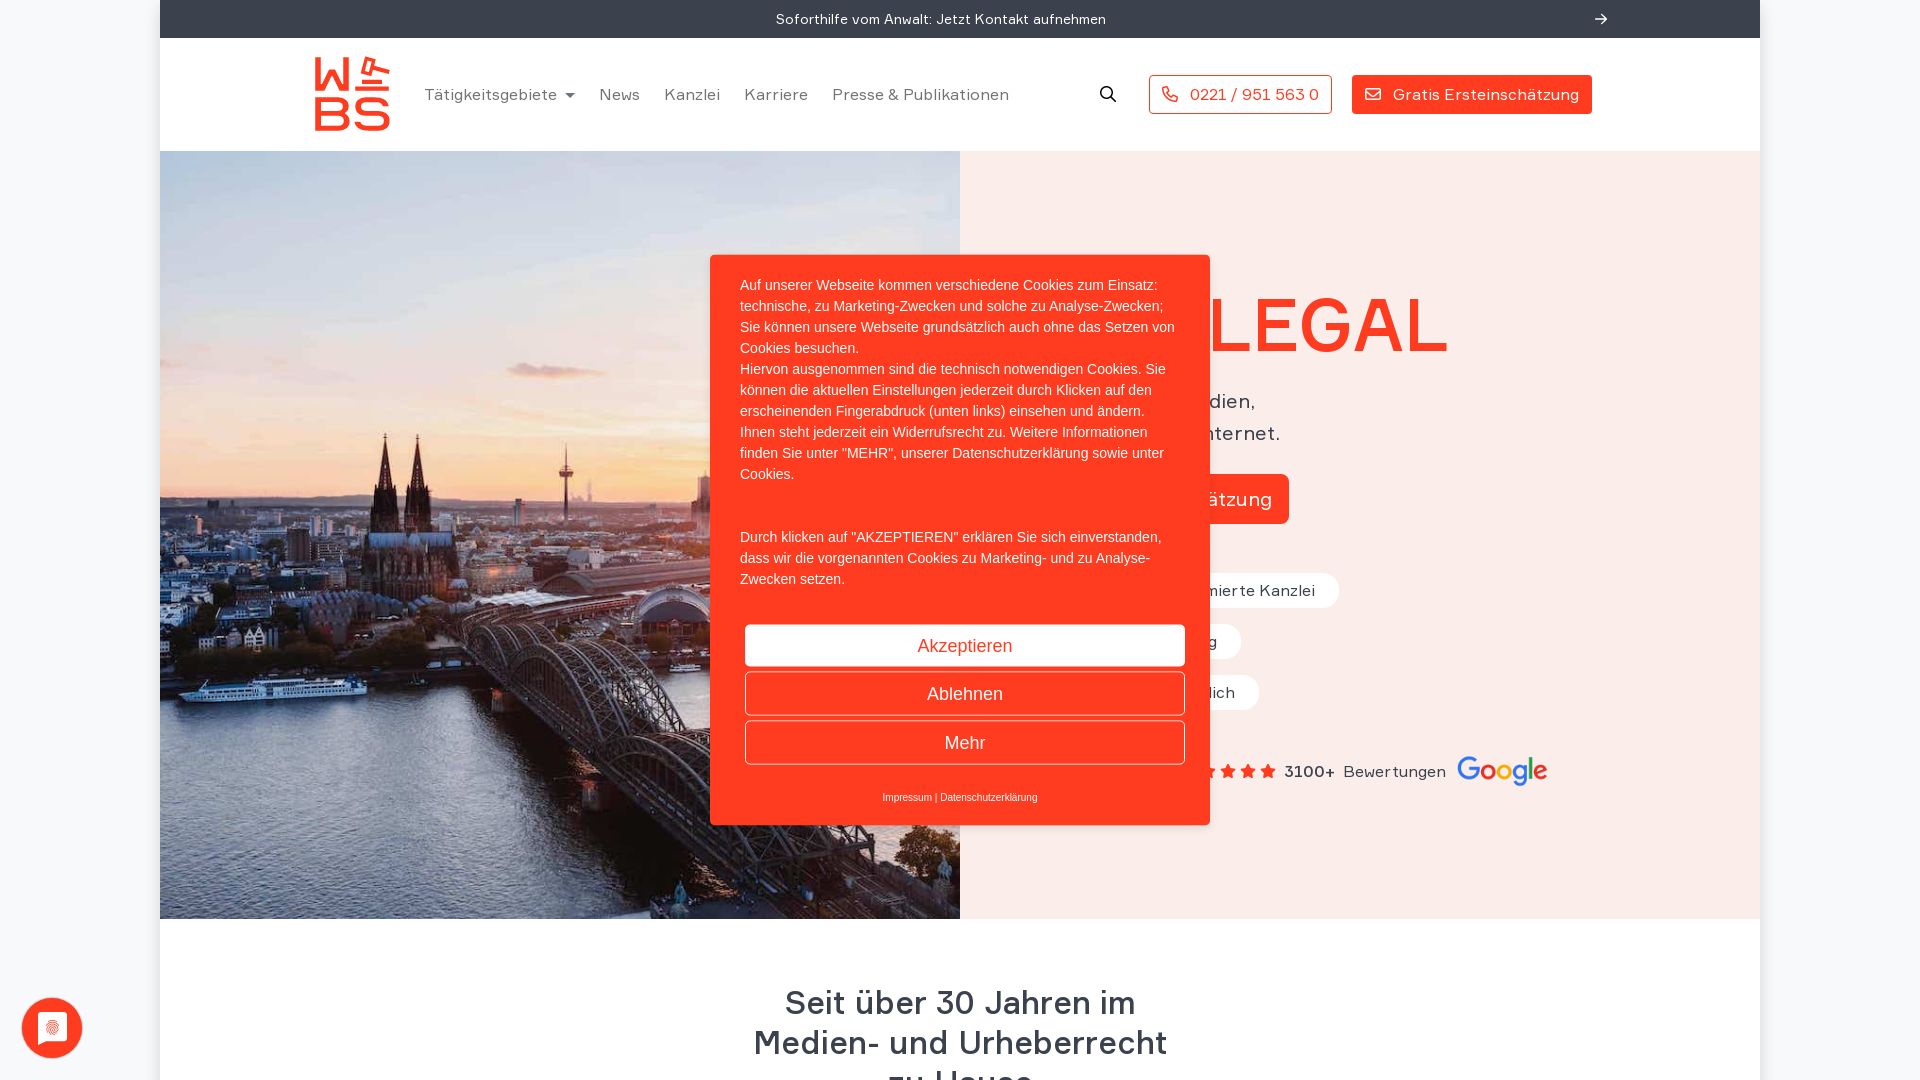 Website status wbs-law.de is   ONLINE